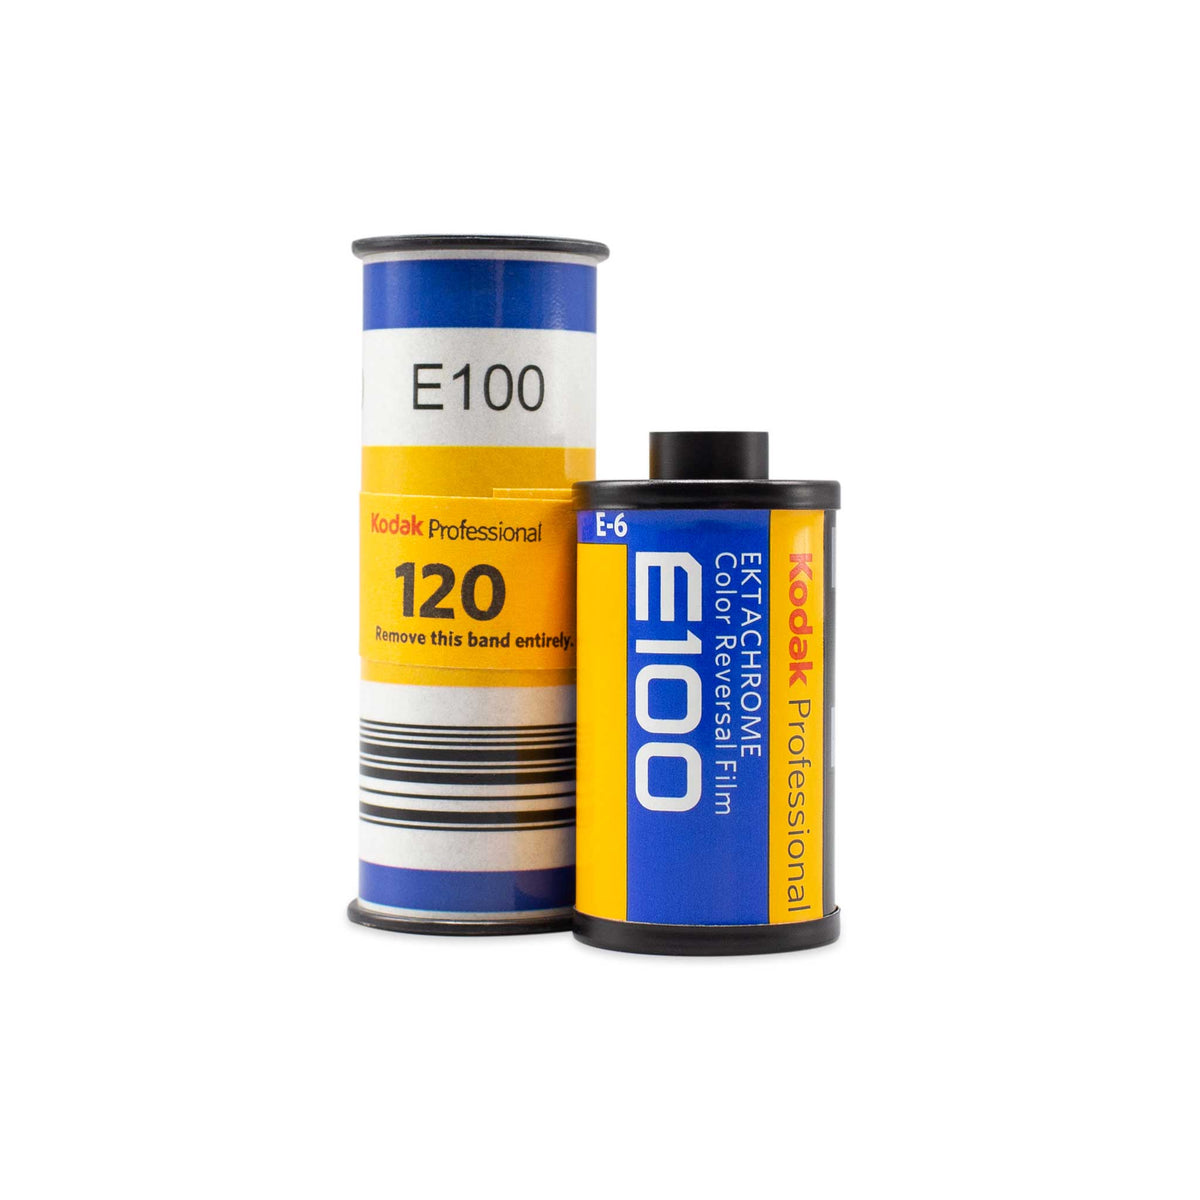 Kodak Ektachrome E100 Color Transparency Film (35mm Roll Film